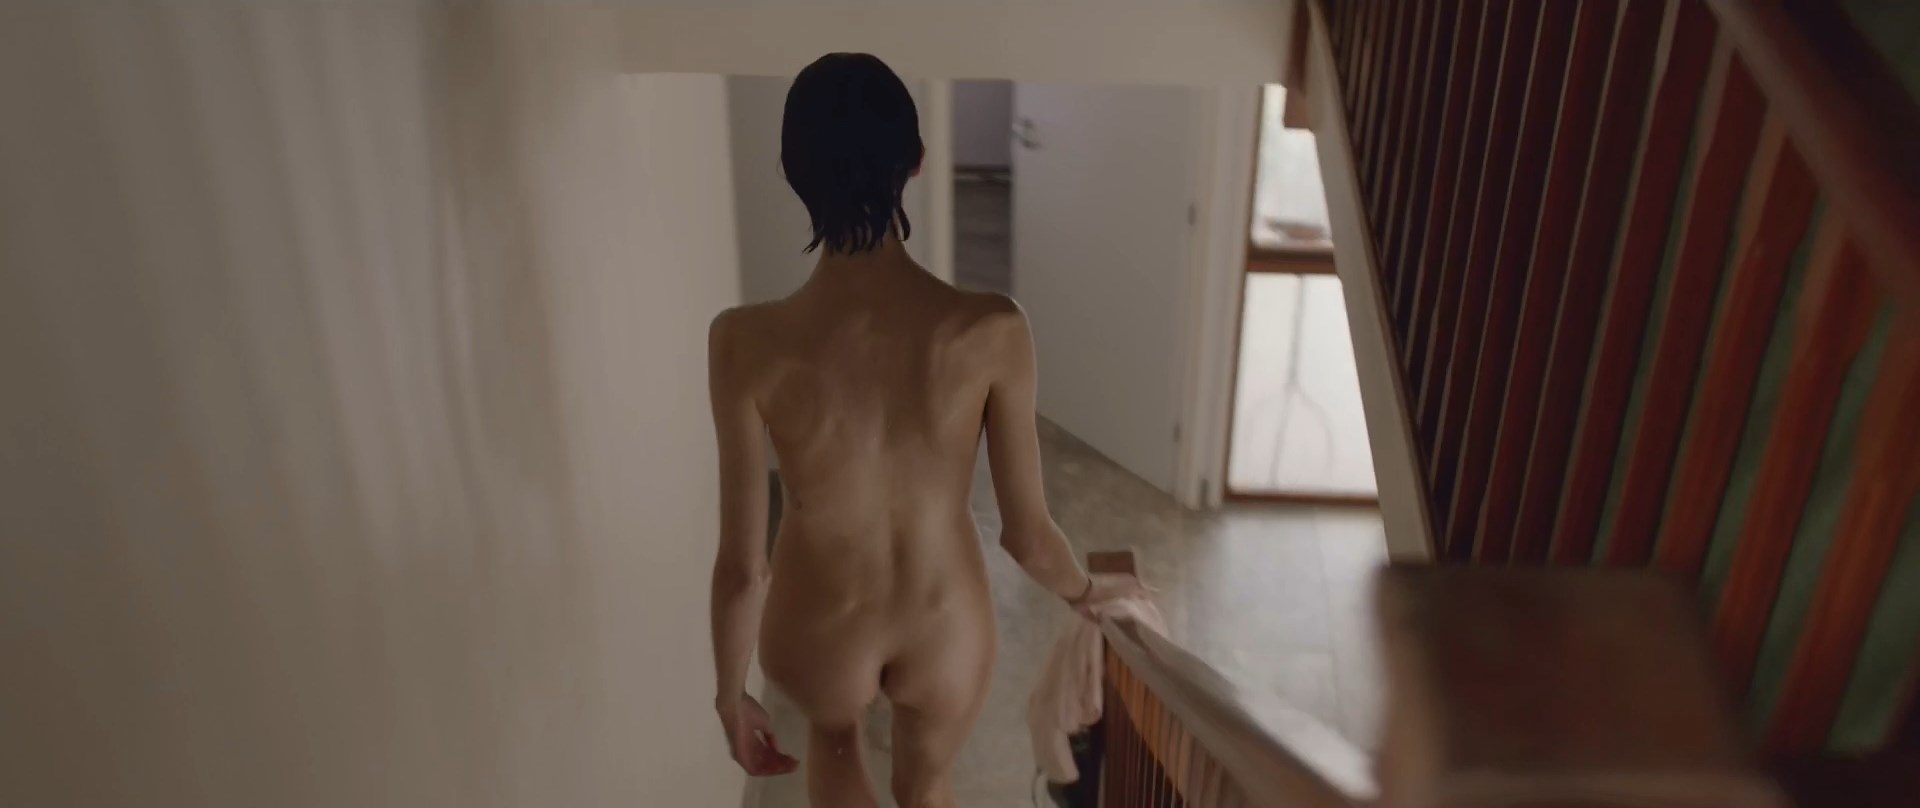 Nude Video Celebs Emma Appleton Nude Dreamlands 2016 